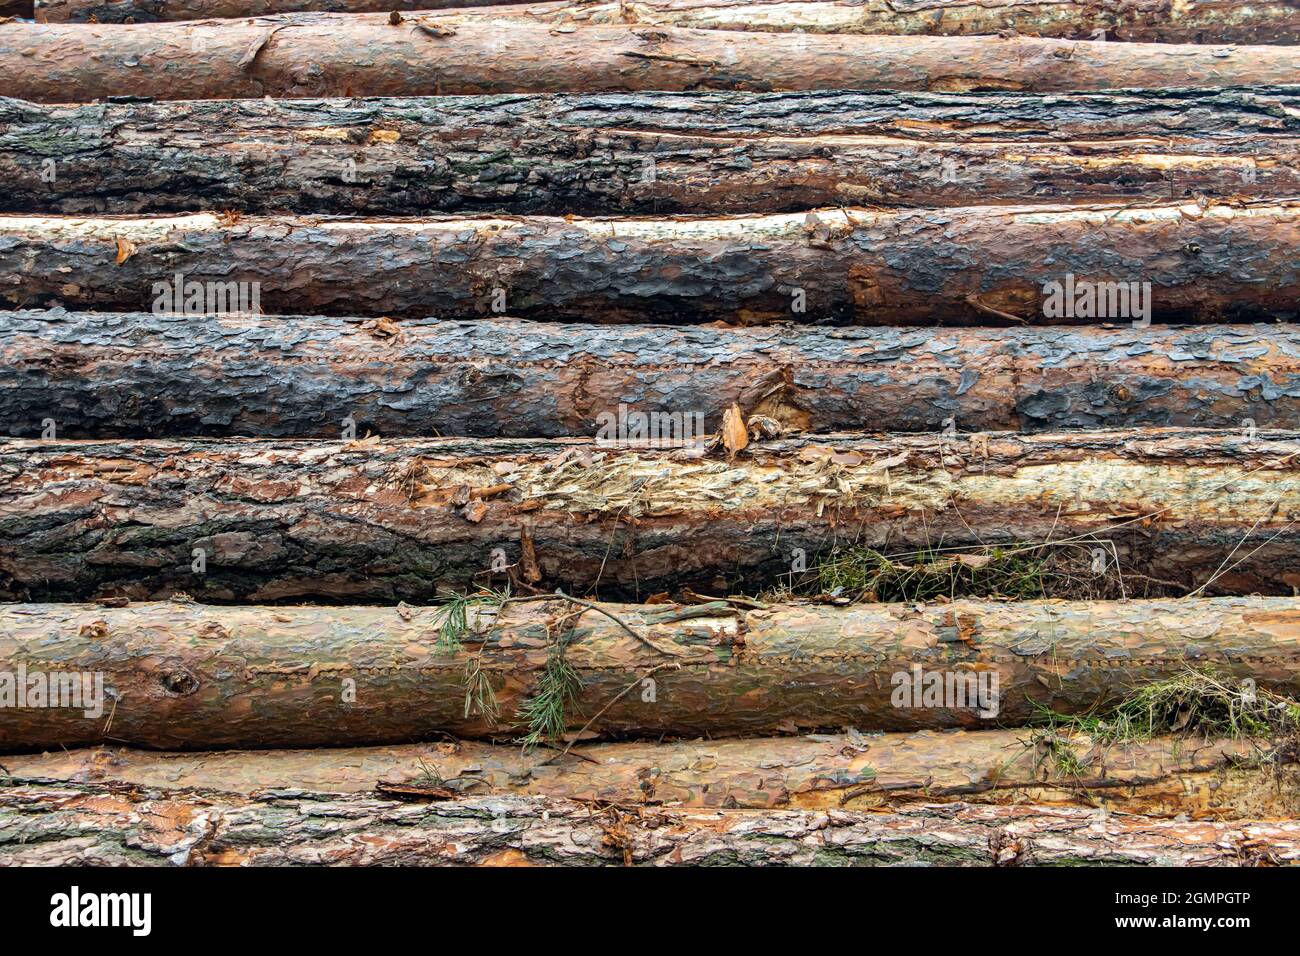 Troncs d'arbre avec écorce sur un tas. Les bûches de bois se trouvent l'une sur l'autre. Banque D'Images